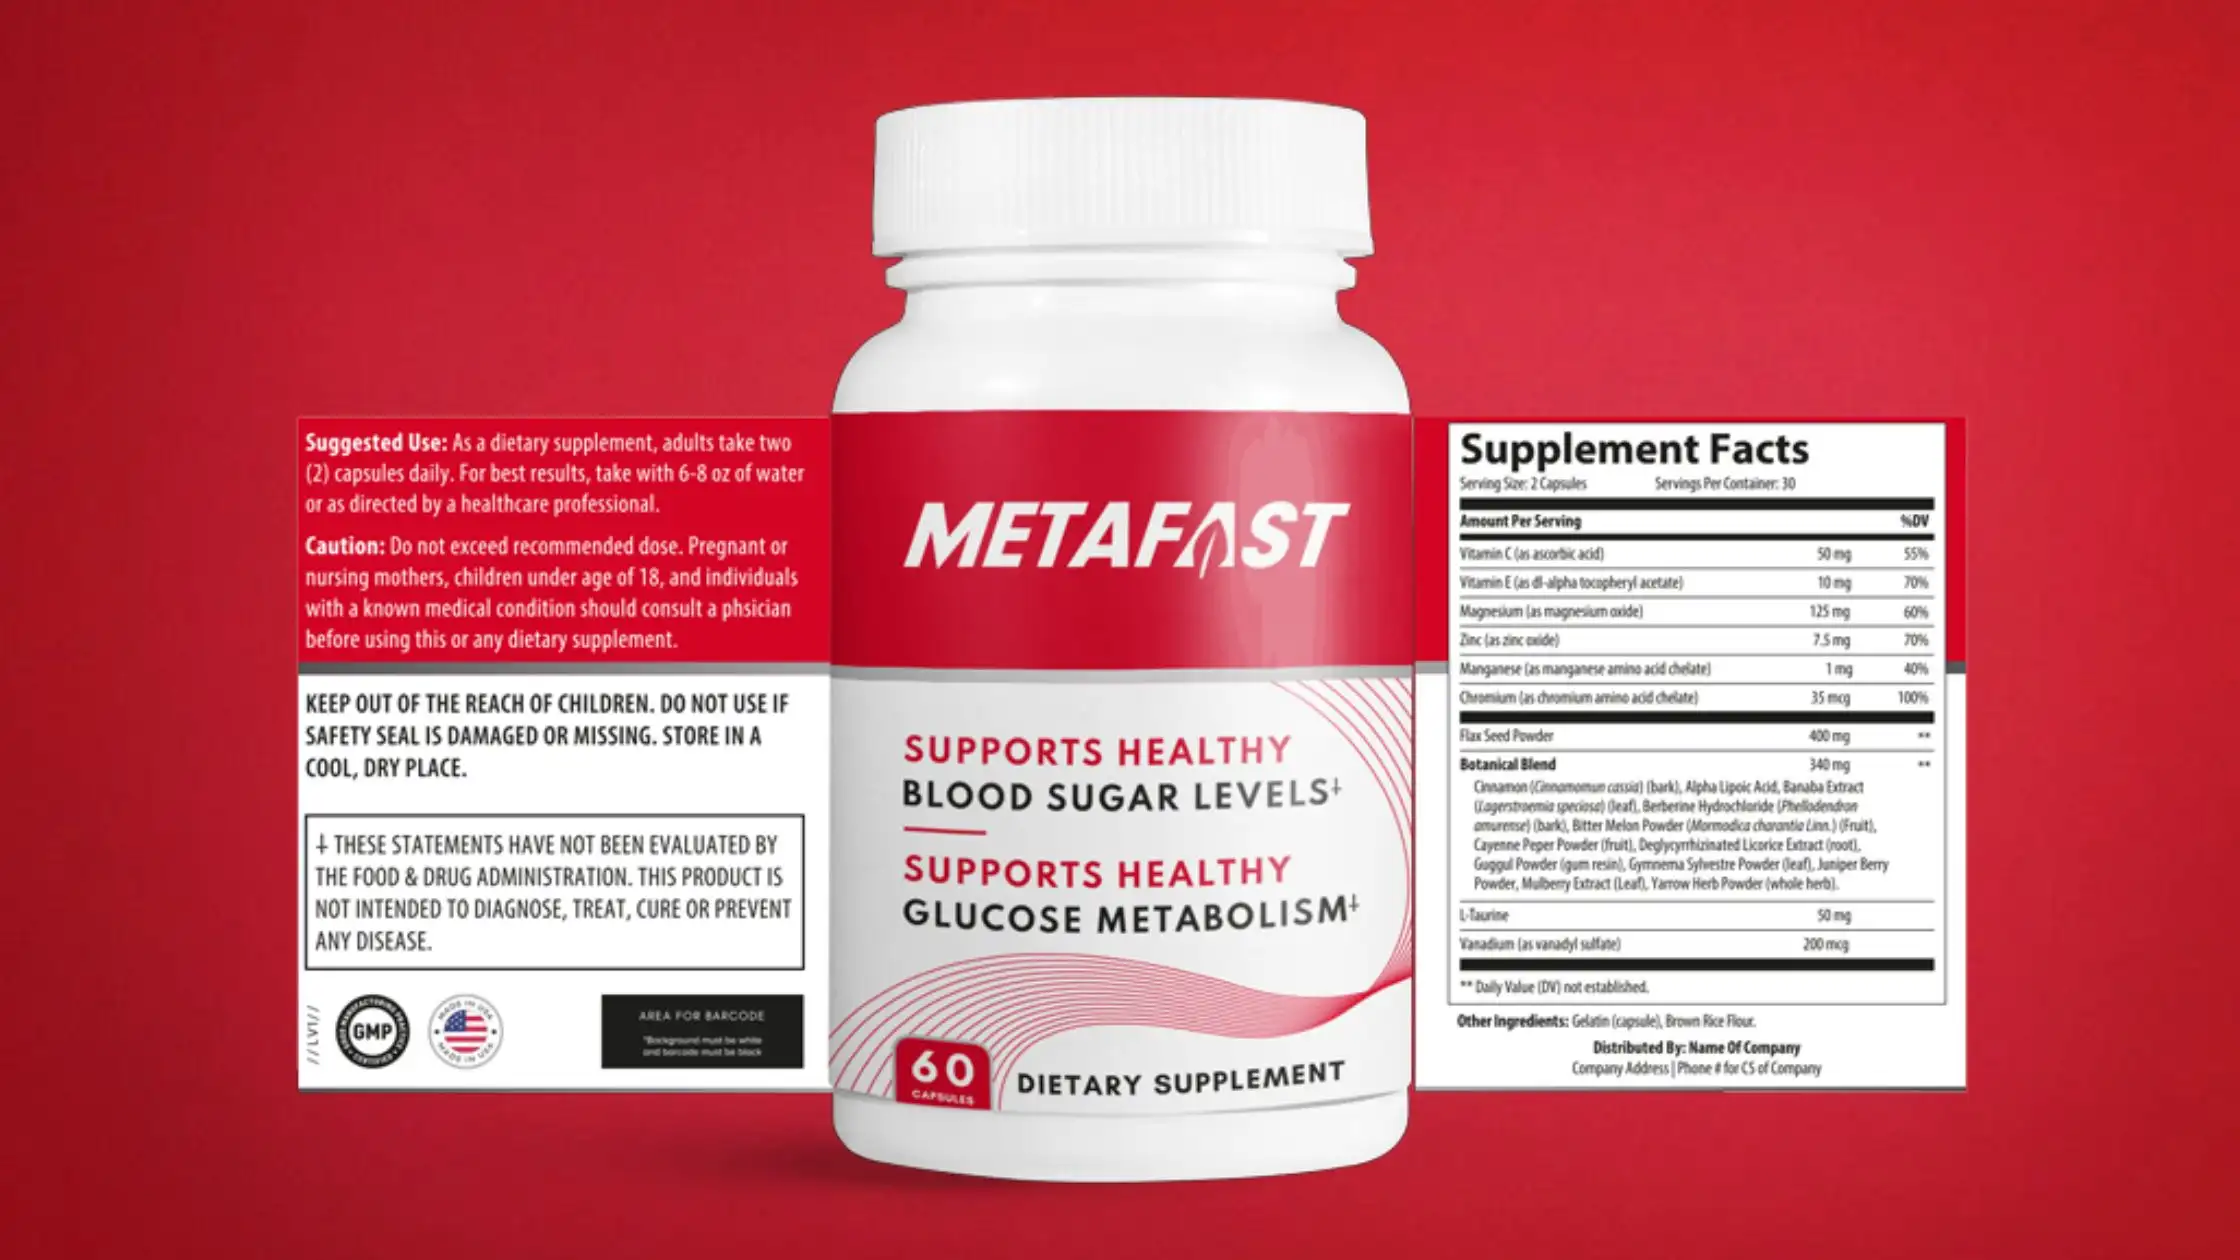 Metafast Supplement Facts